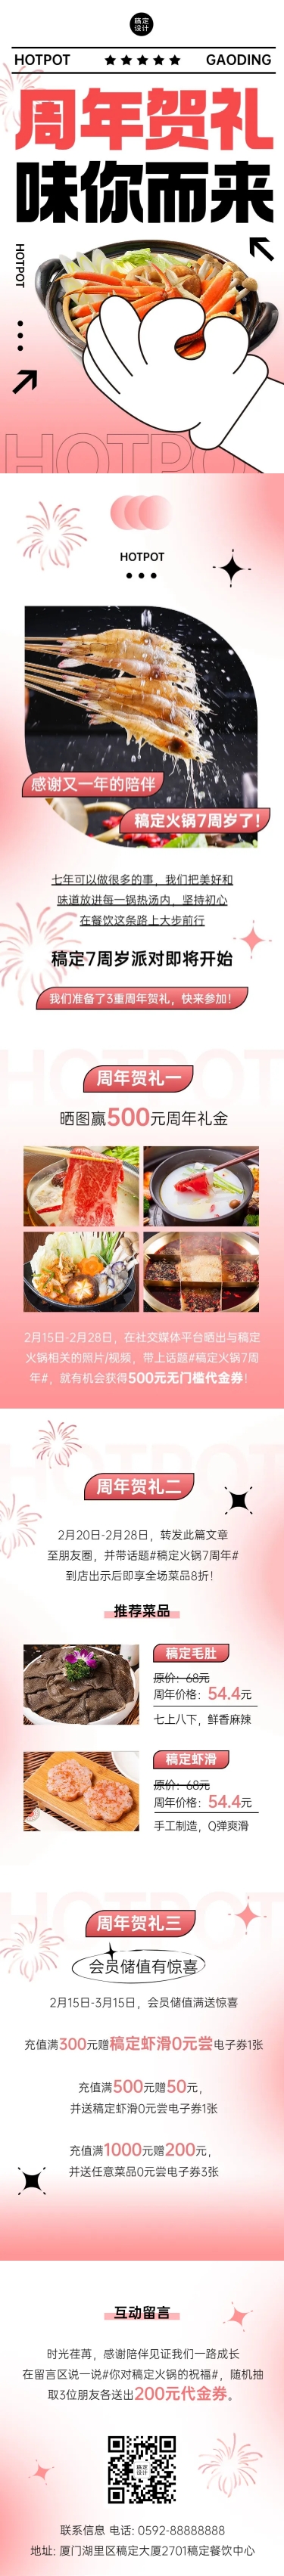 餐饮门店火锅周年店庆文章长图